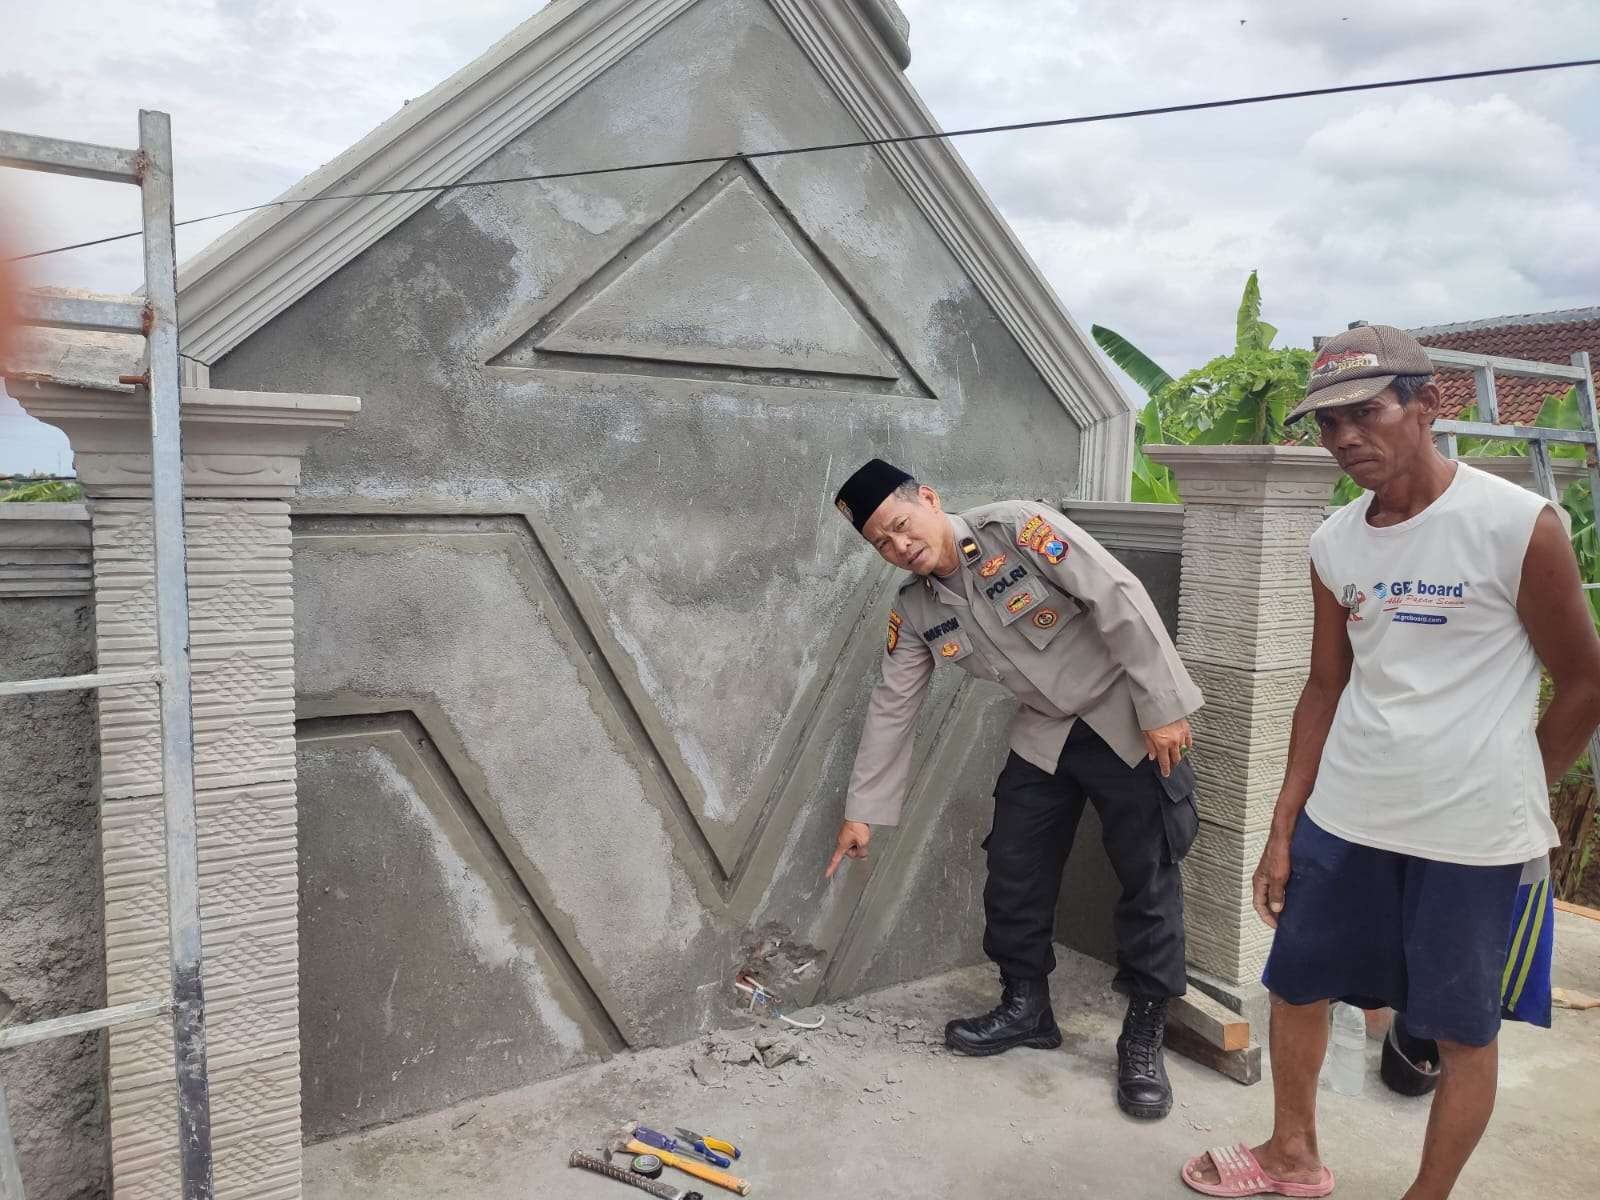 Anggota Polsek Tikung sedang memeriksa tempat kejadian perkara, di mana pekerja bangunan di Lamongan tewas tersengat listrik. (Foto: Dokumen Polsek Tikung)